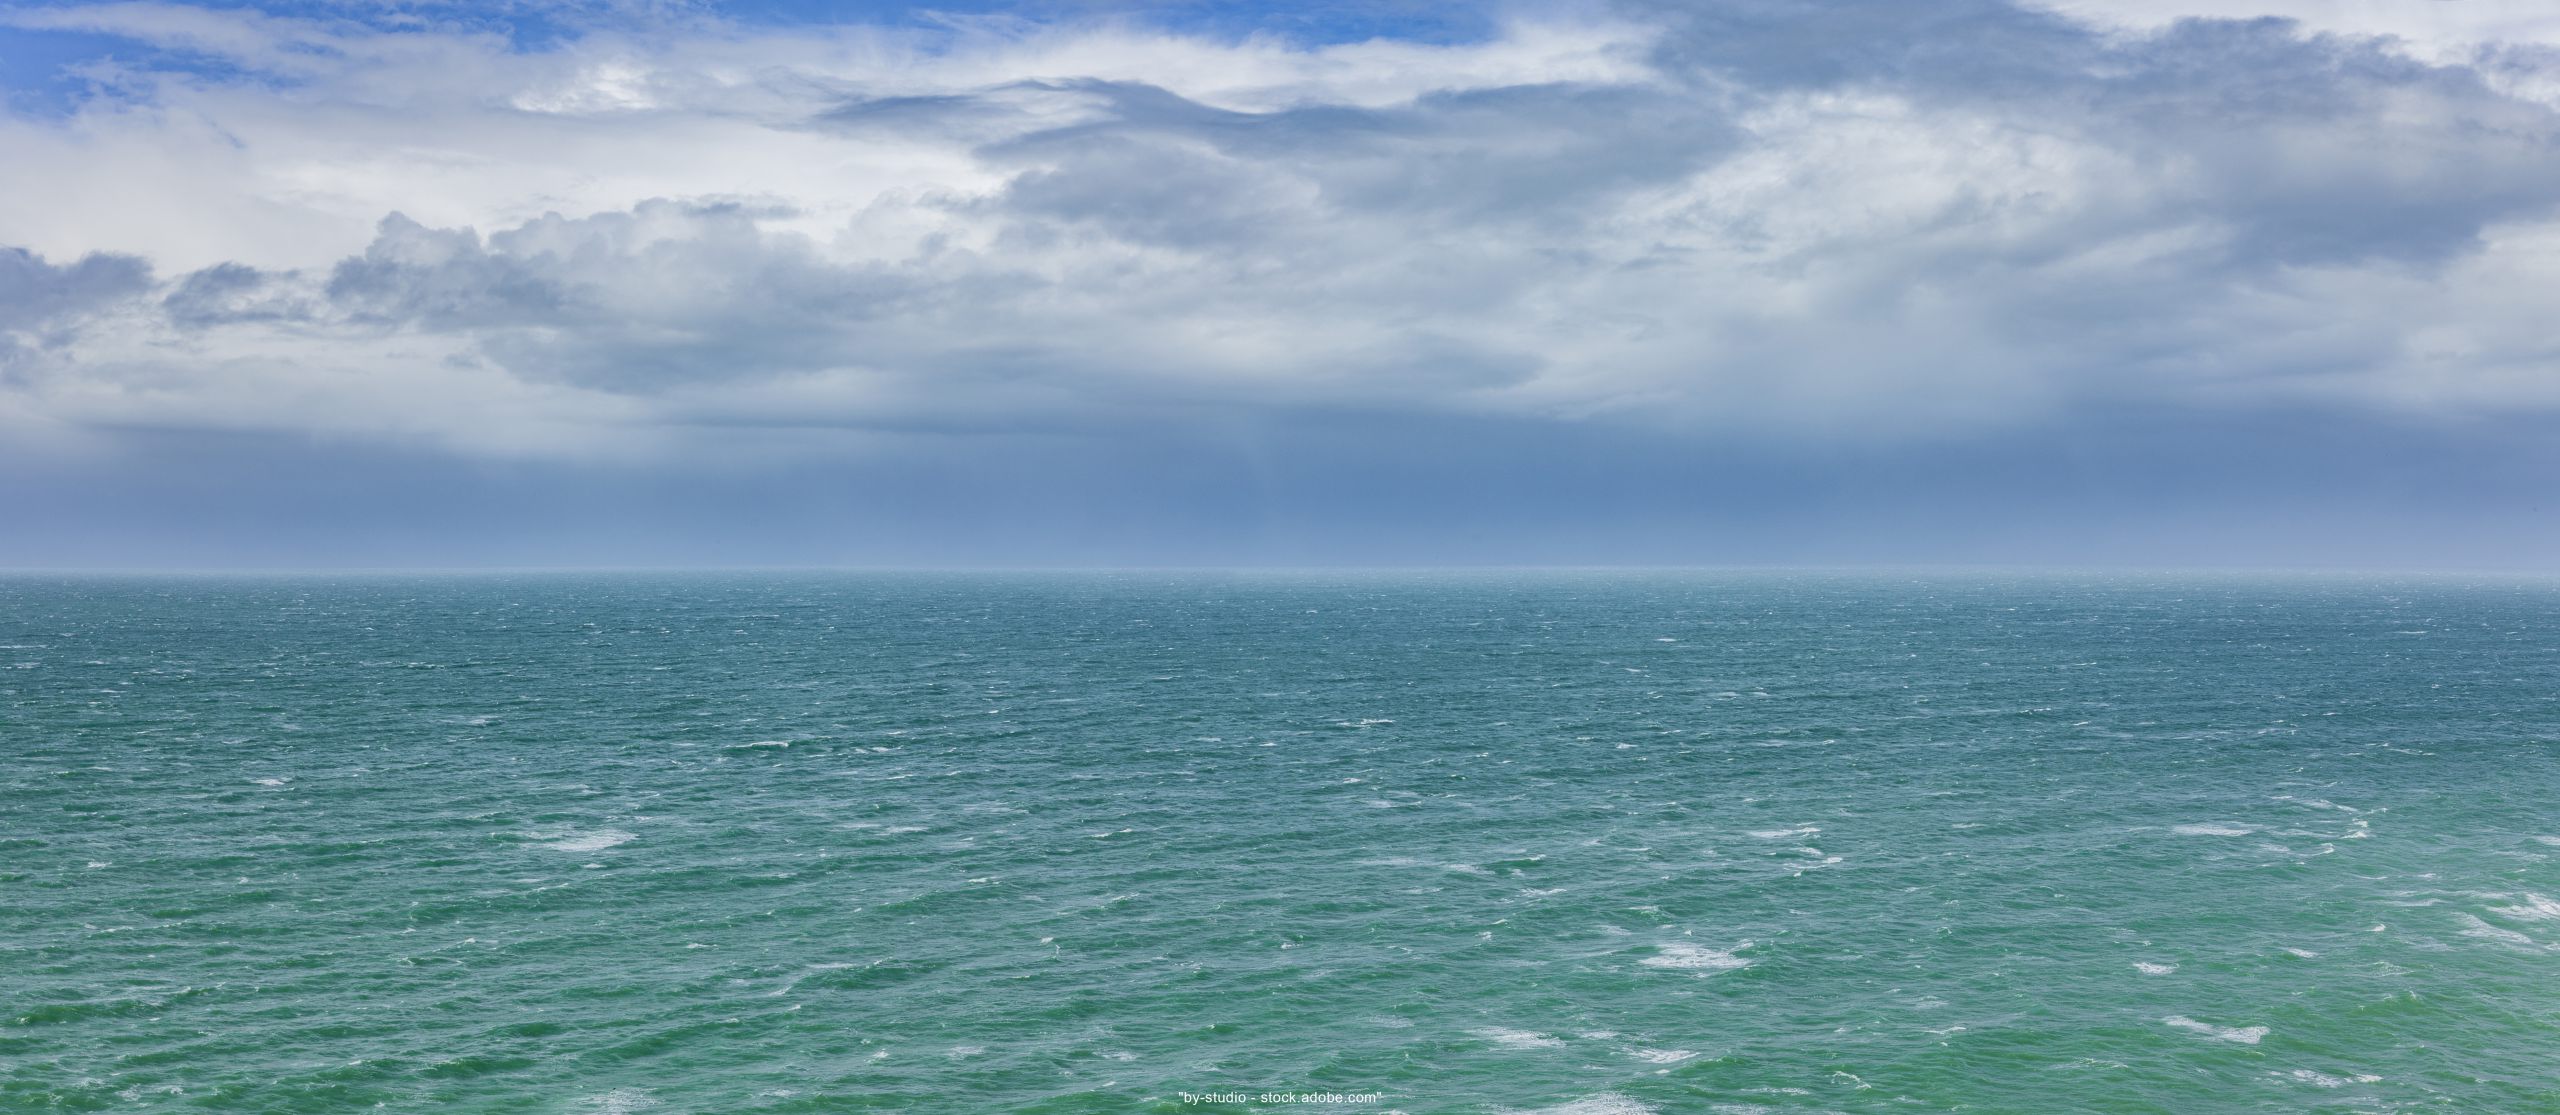 Foto unten türkises Meer mit leichten Wellen oben hellblauer Himmel mit weißen Wolken